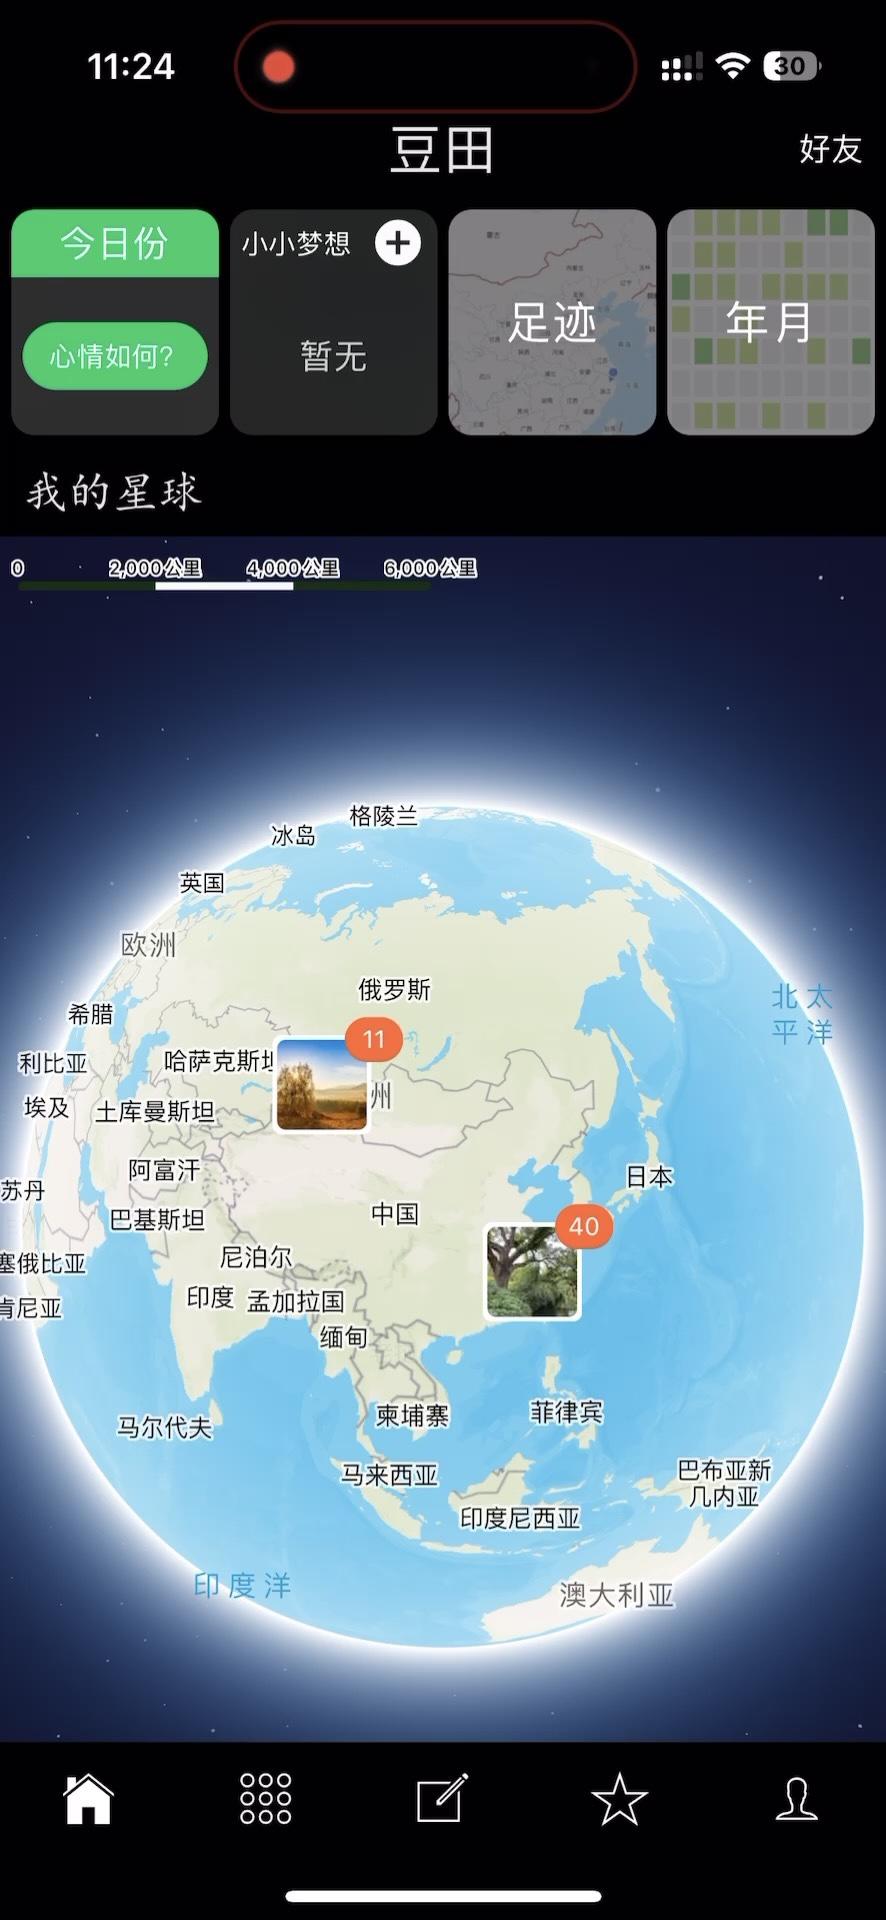 520，让我们的世界旋转起来吧！<br/>最新版本的豆田全地图支持中文及图片聚合，更新体验哦！